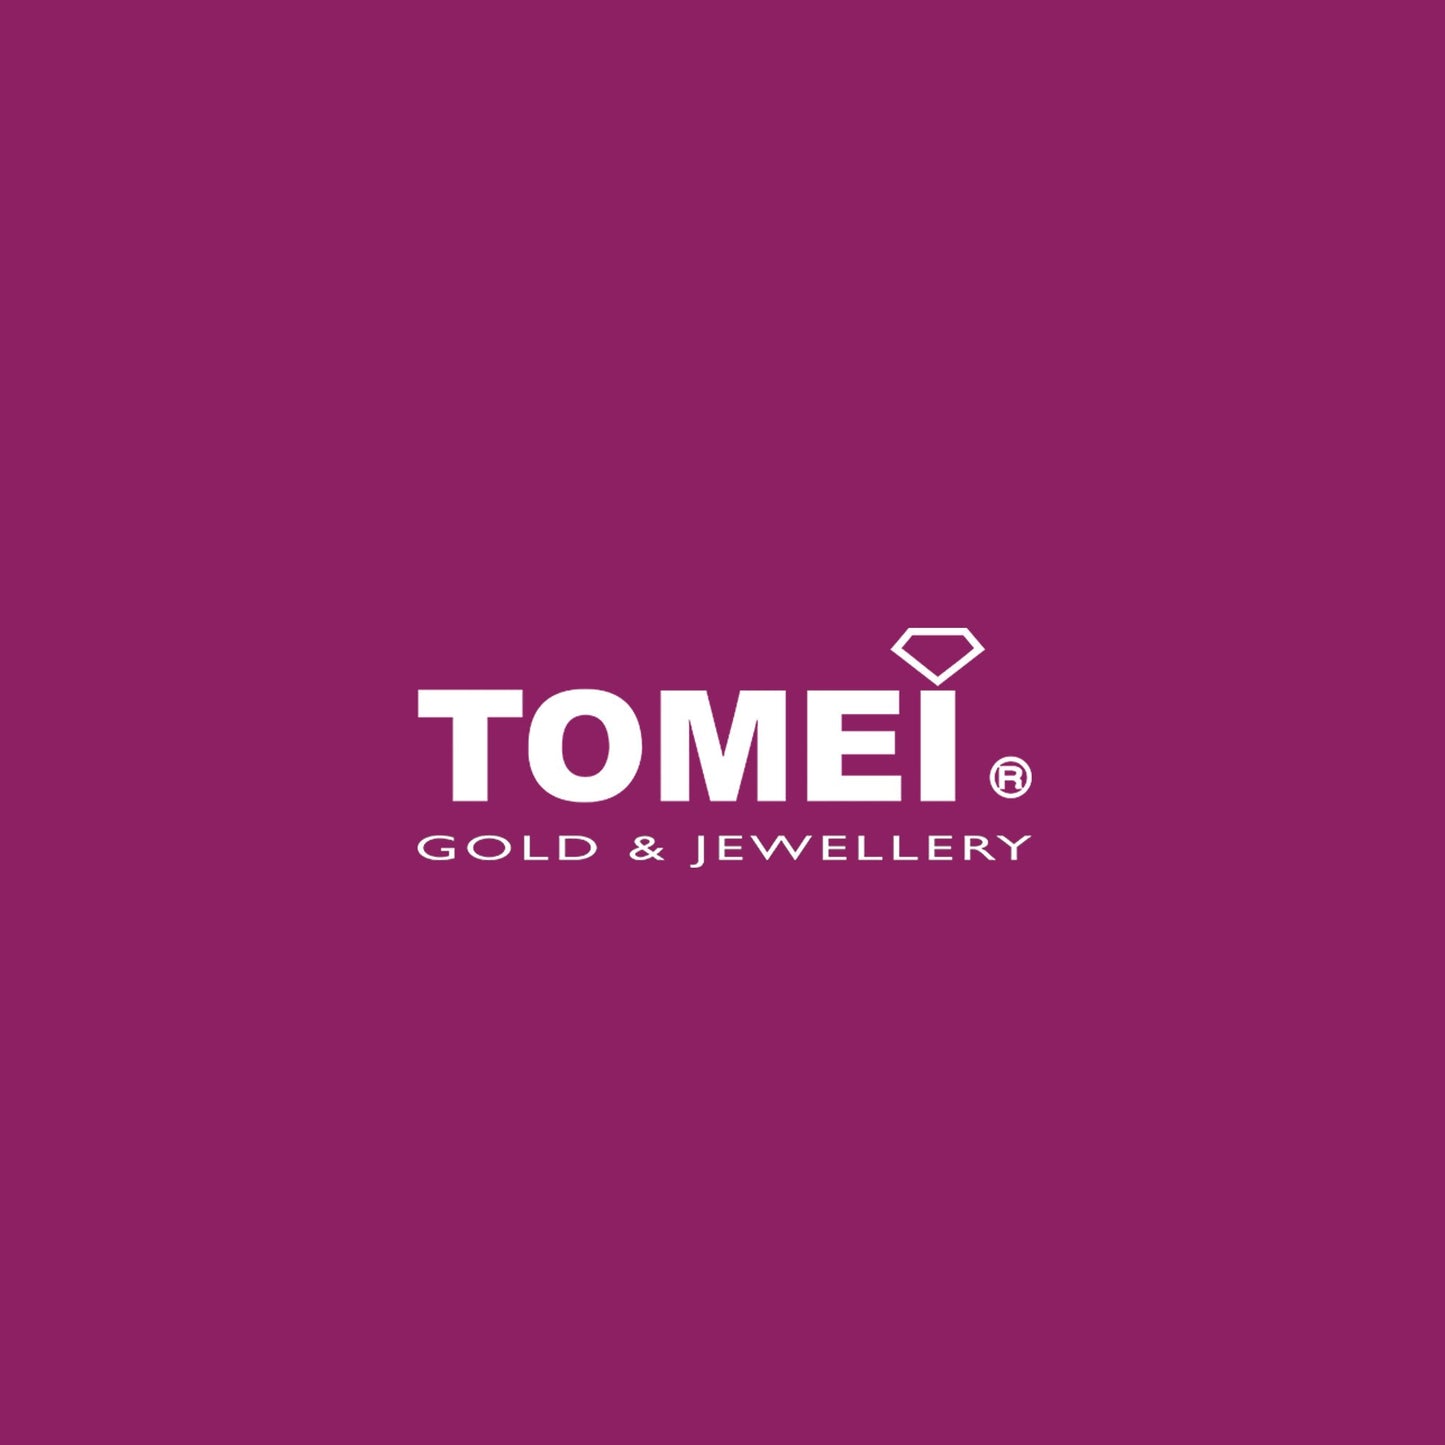 TOMEI South Sea Pearl Pendant, White Gold 750